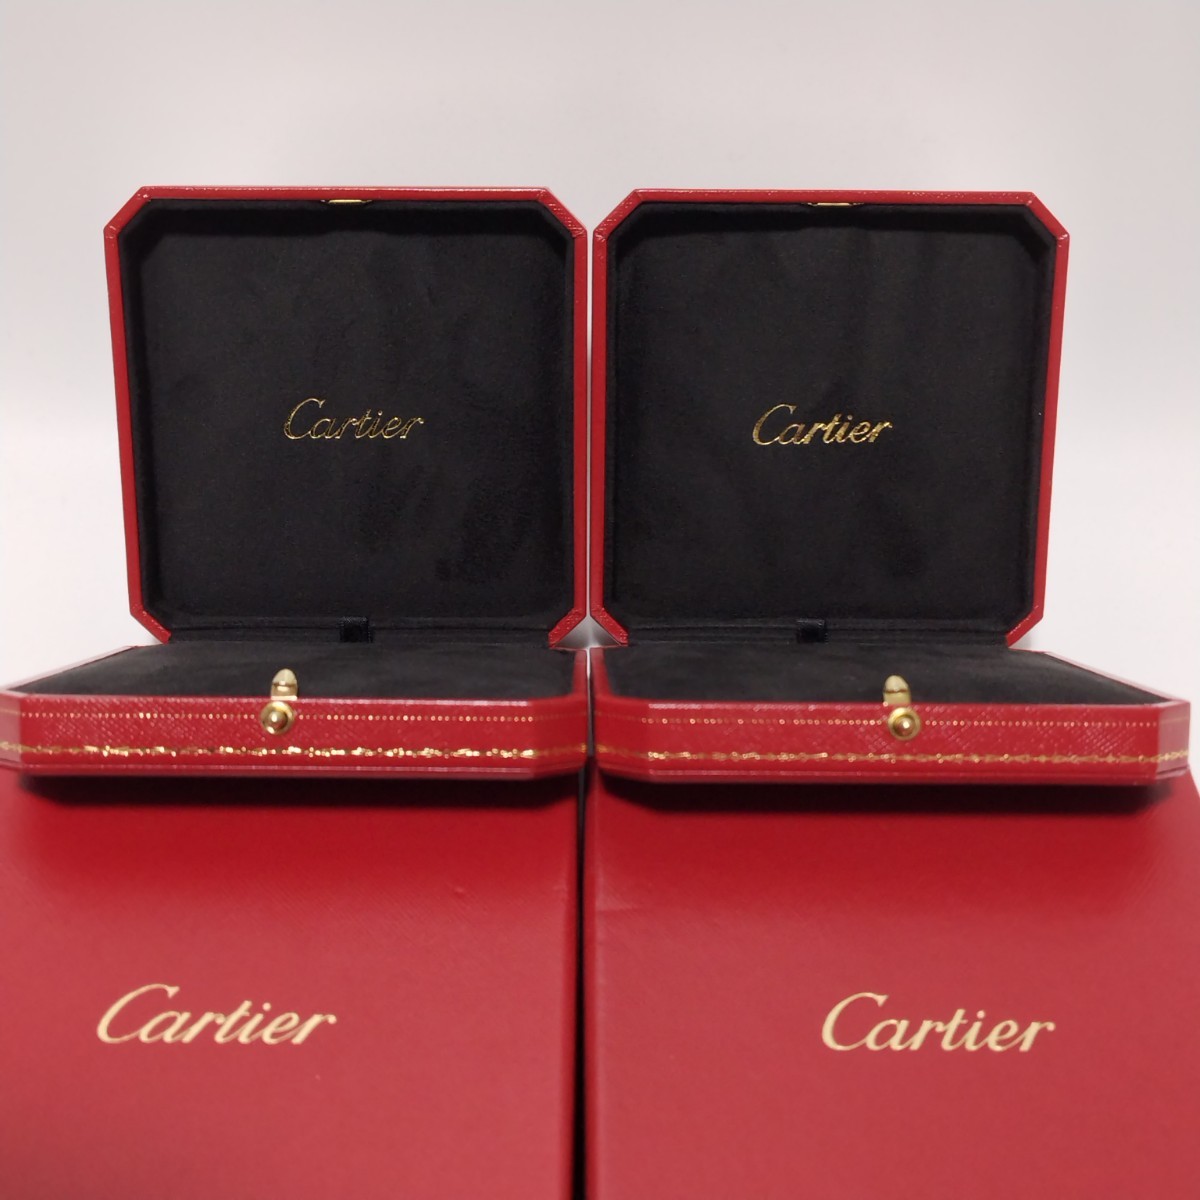 Cartier カルティエ 空箱 ボックス ケース まとめ セット アクセサリー ジュエリー ペンダント ネックレス S-0043 _画像7